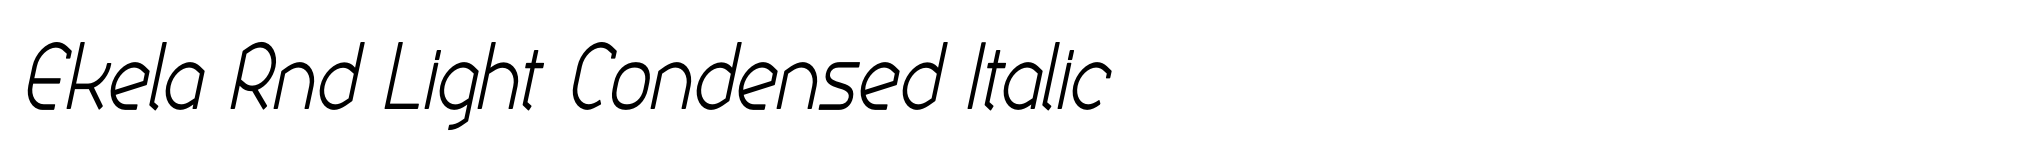 Ekela Rnd Light Condensed Italic image